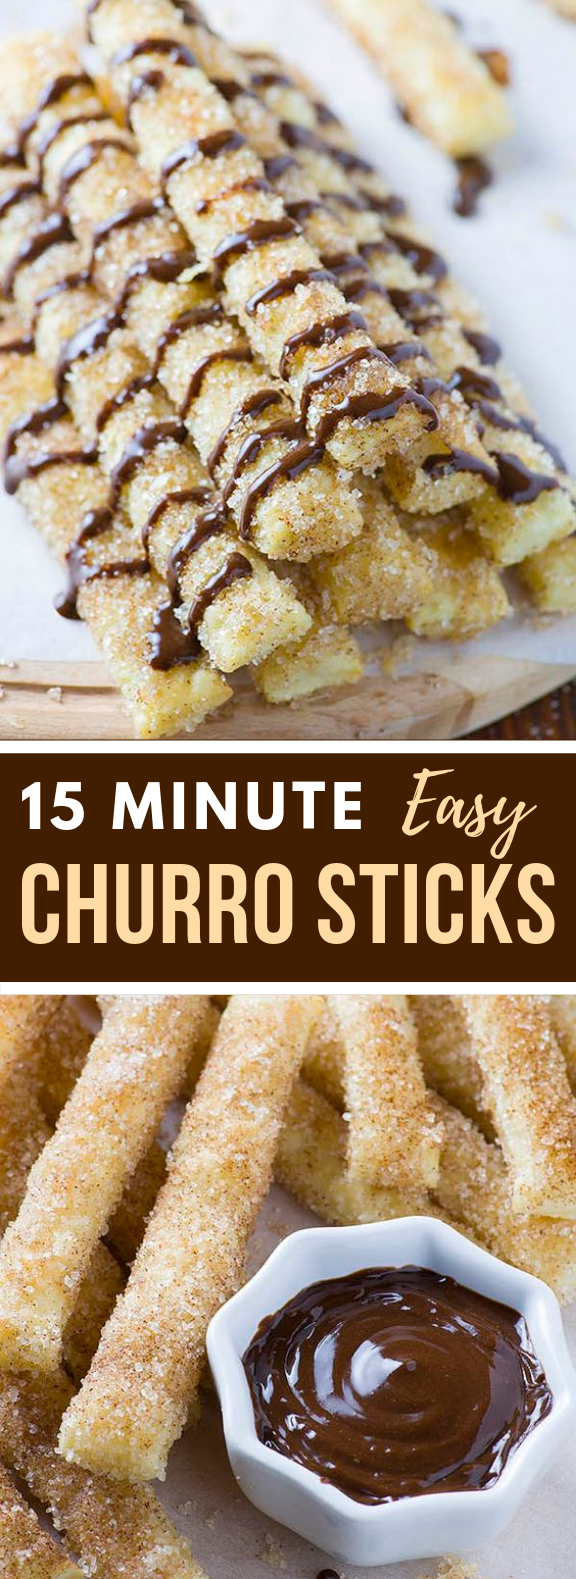 15 Minutes Churro Sticks #desserts #amazingsnacks